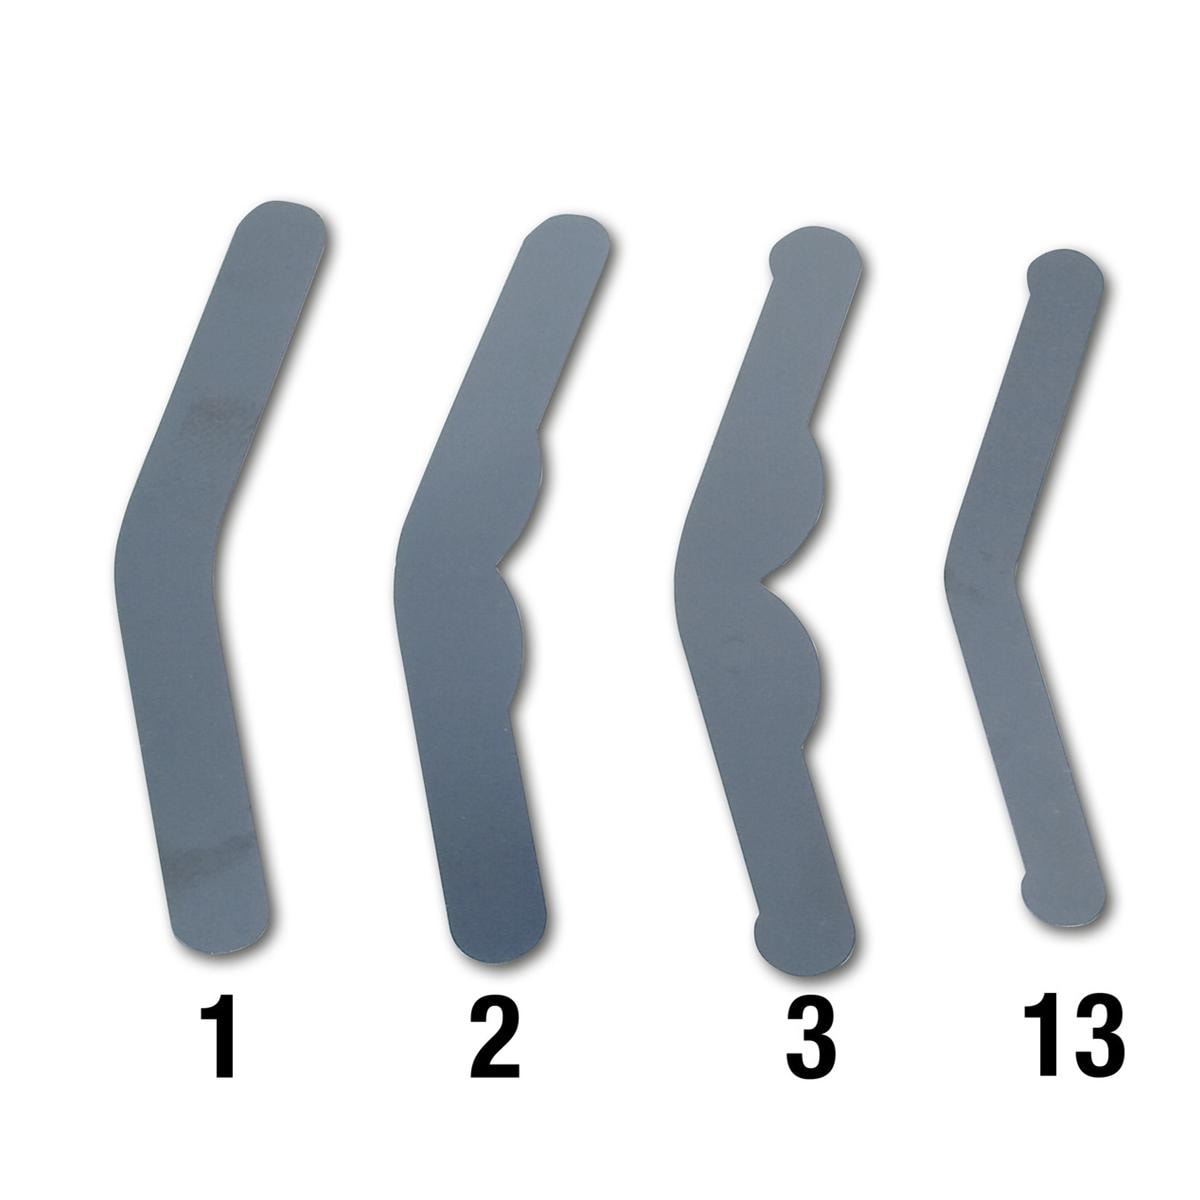 HS-Tofflemire Matrizen, Tofflemire Matrix Bands - Standardpackung - Nr. 1, Stärke 0,04 mm (1101), Packung 12 Stück